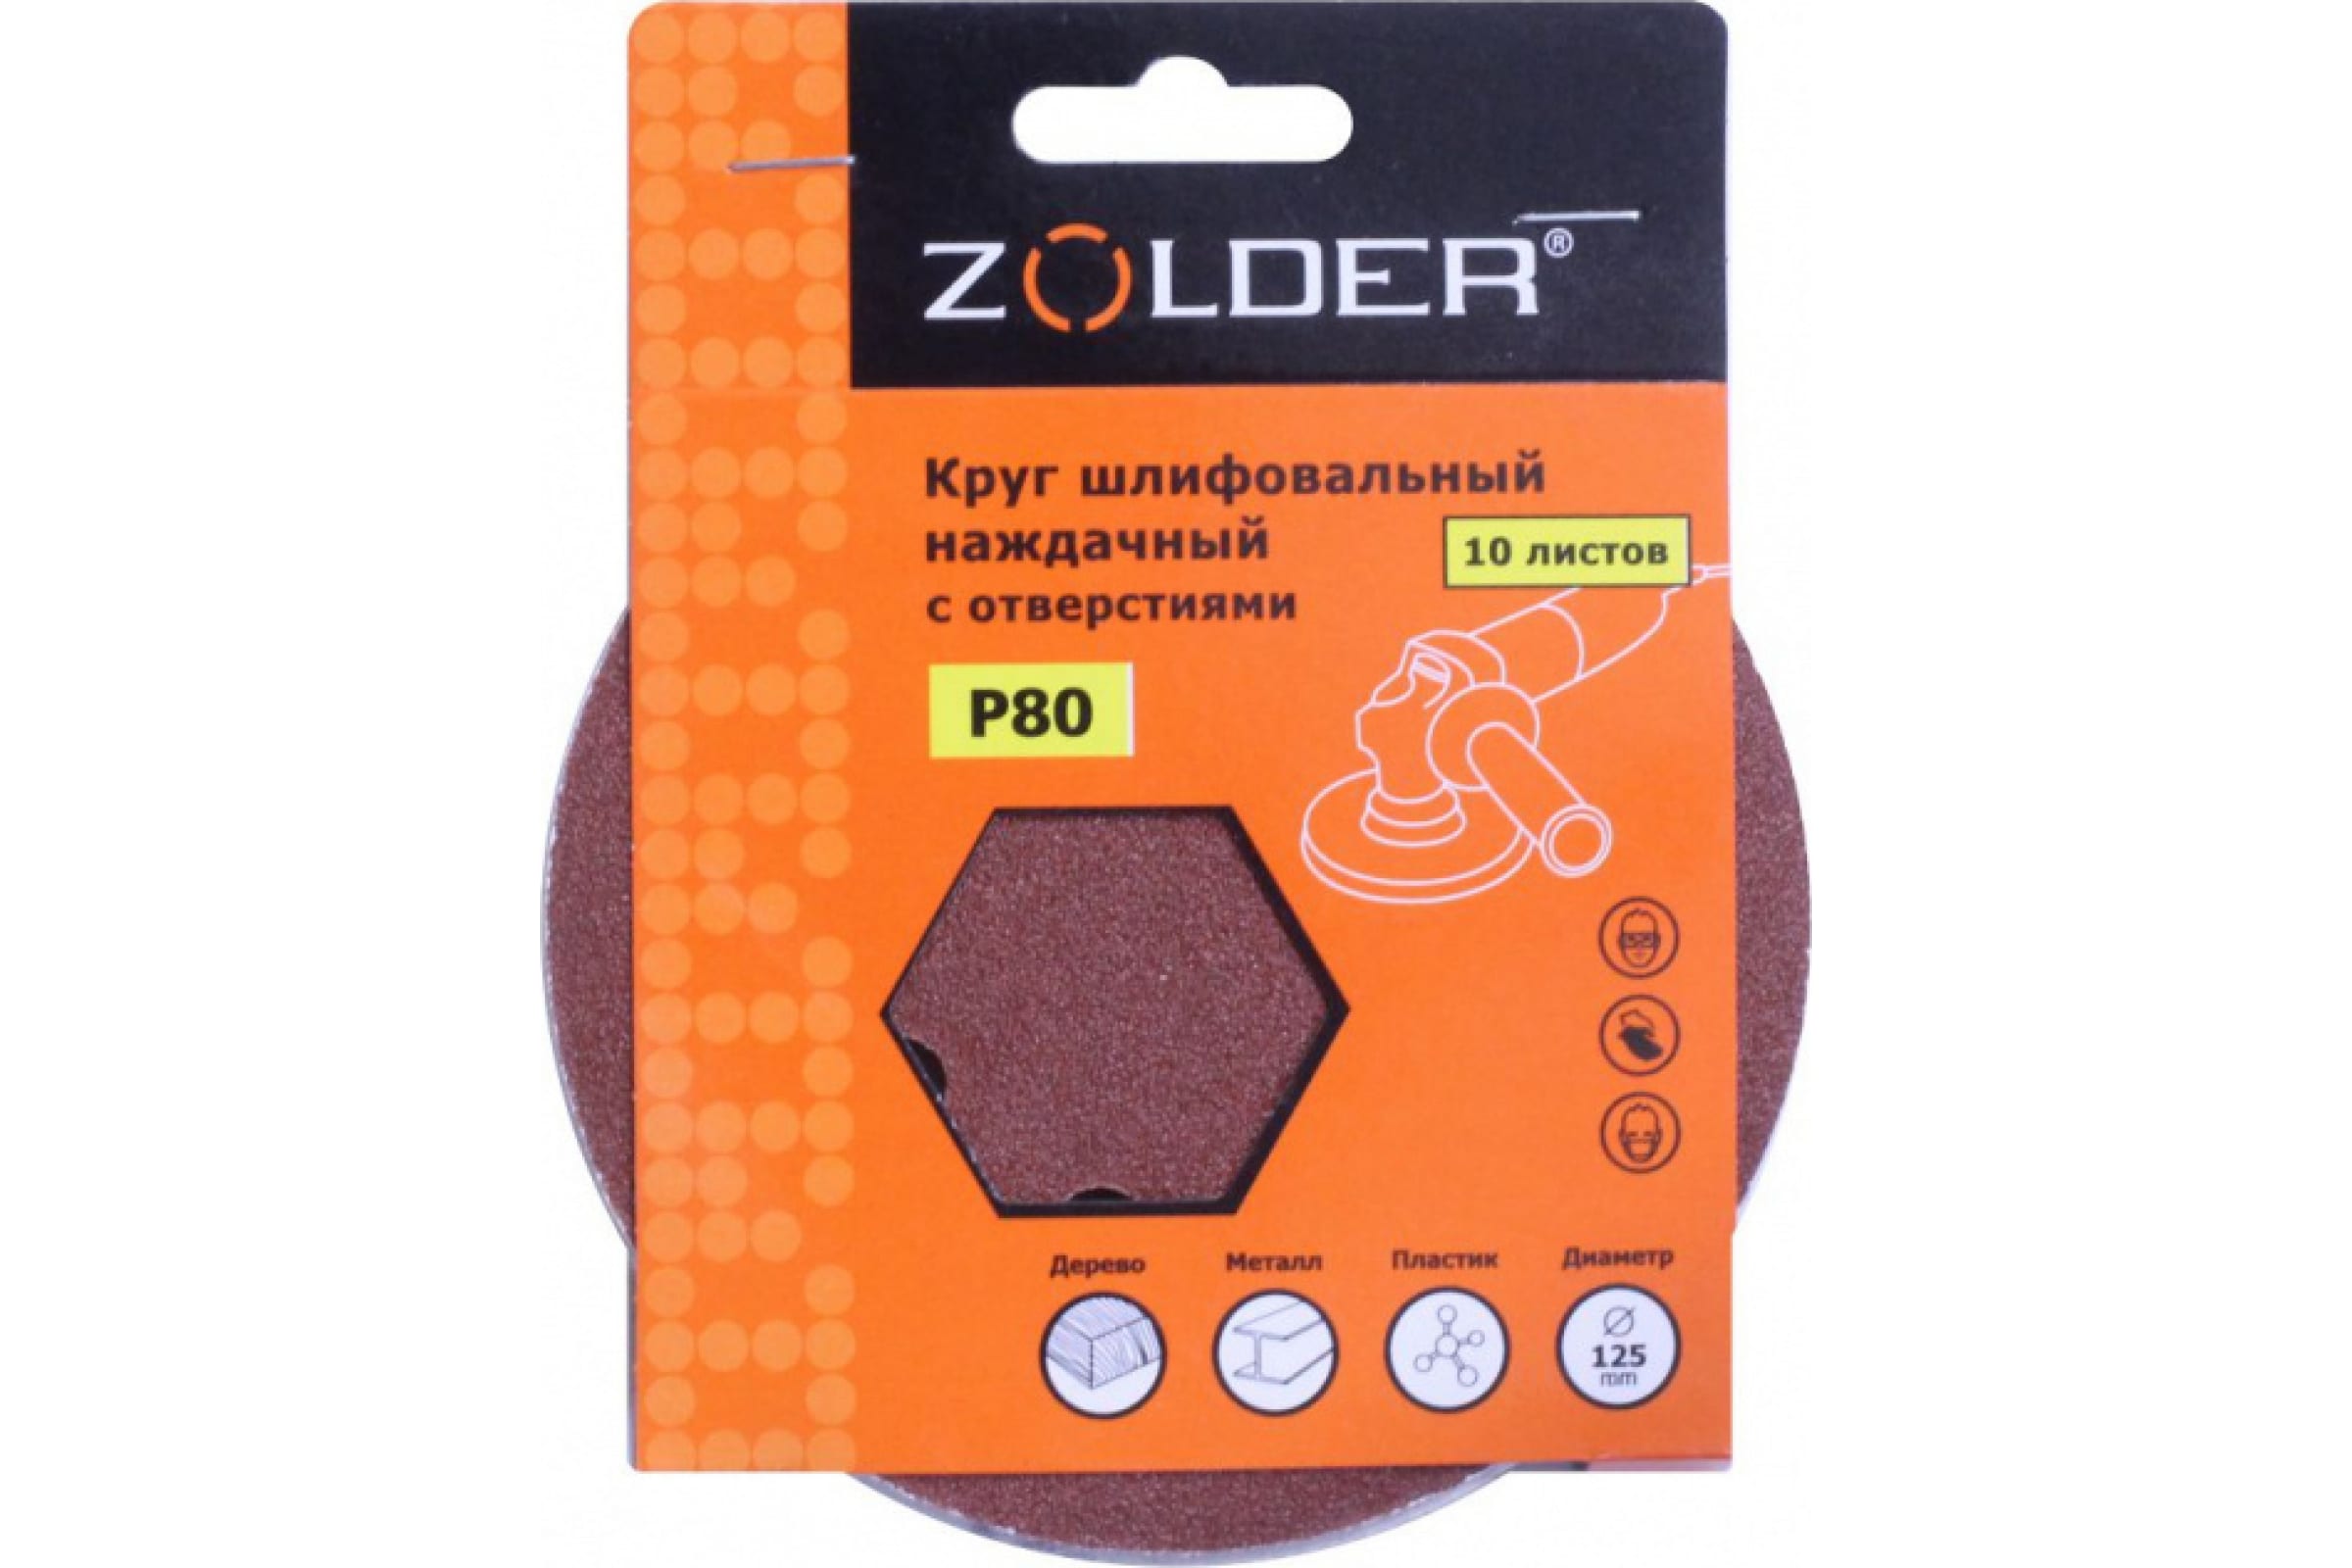 ZOLDER Круги шлифовальные наждачные 10шт/ P80, 125 мм, 8 отверстий, липучка / Z-108-808